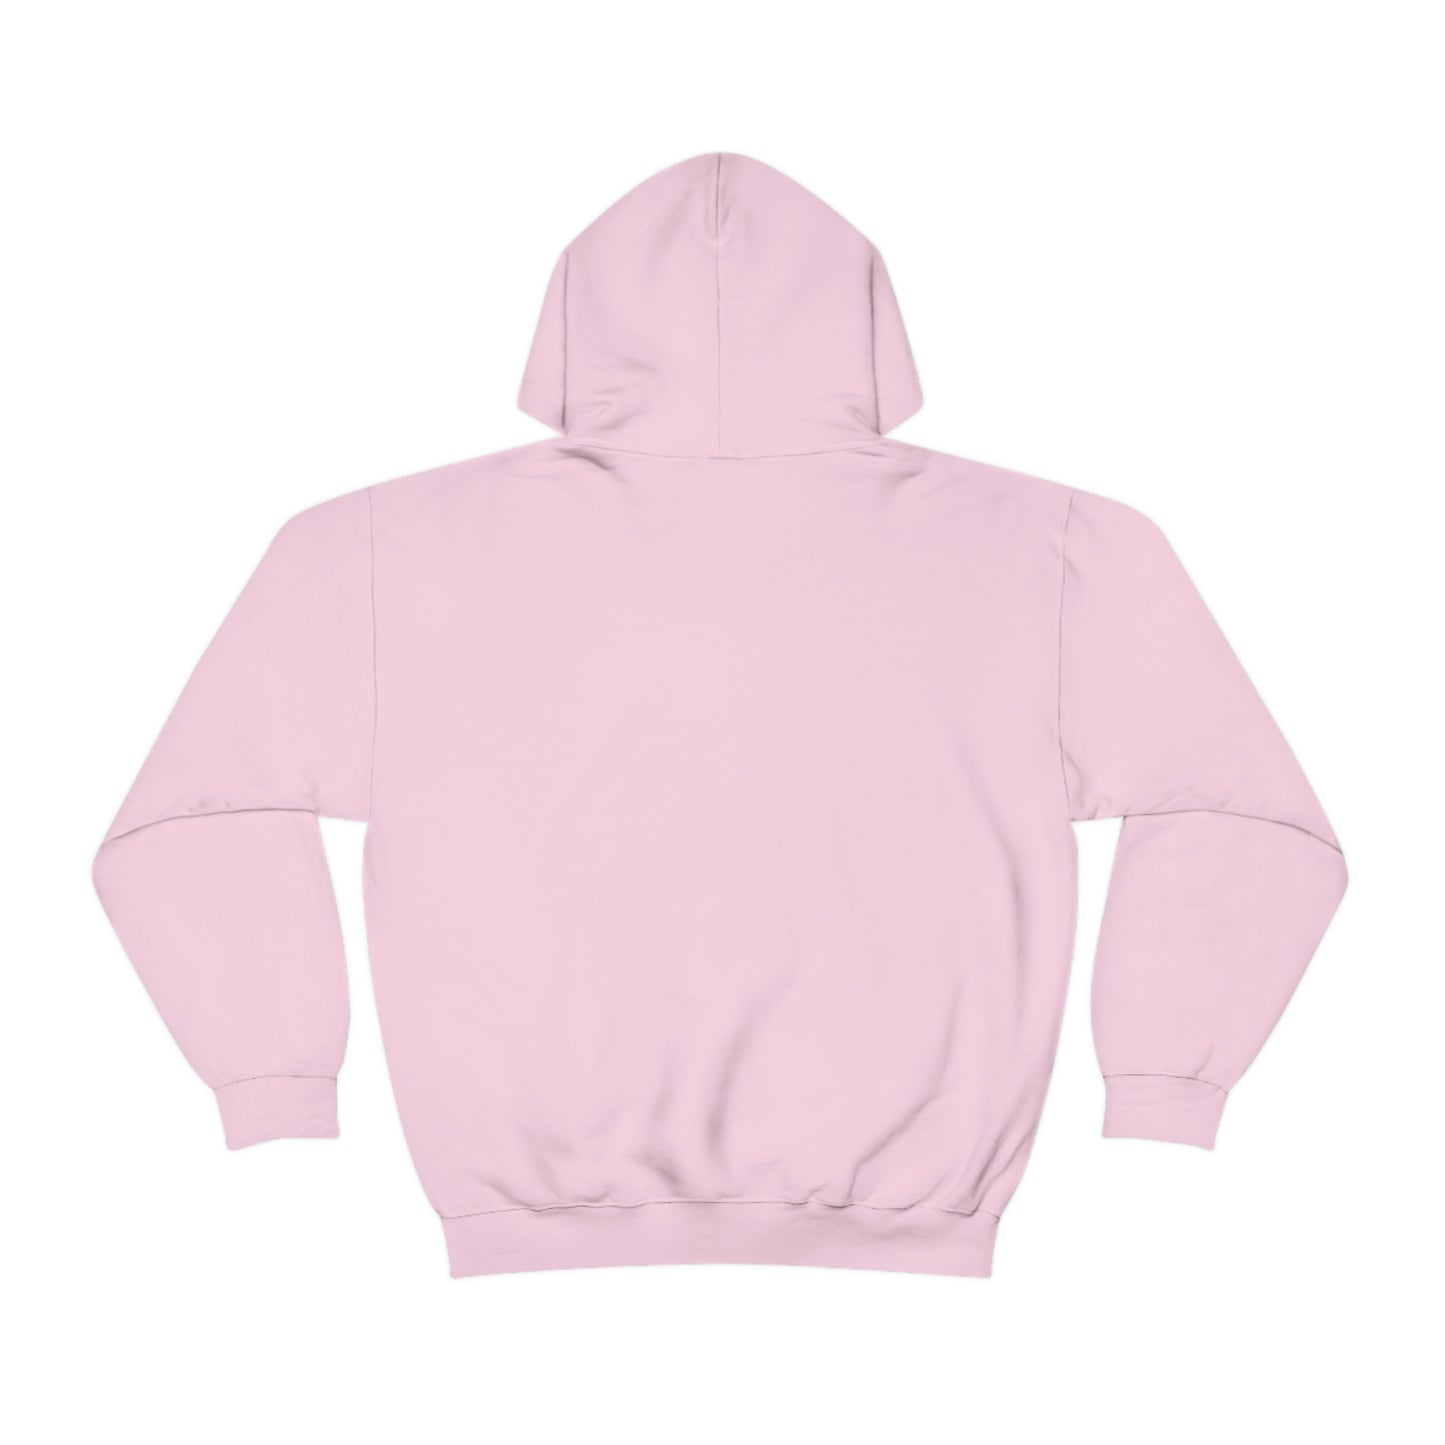 "If It's Not TMI, It's Small Talk" Unisex Heavy Blend™ Hooded Sweatshirt